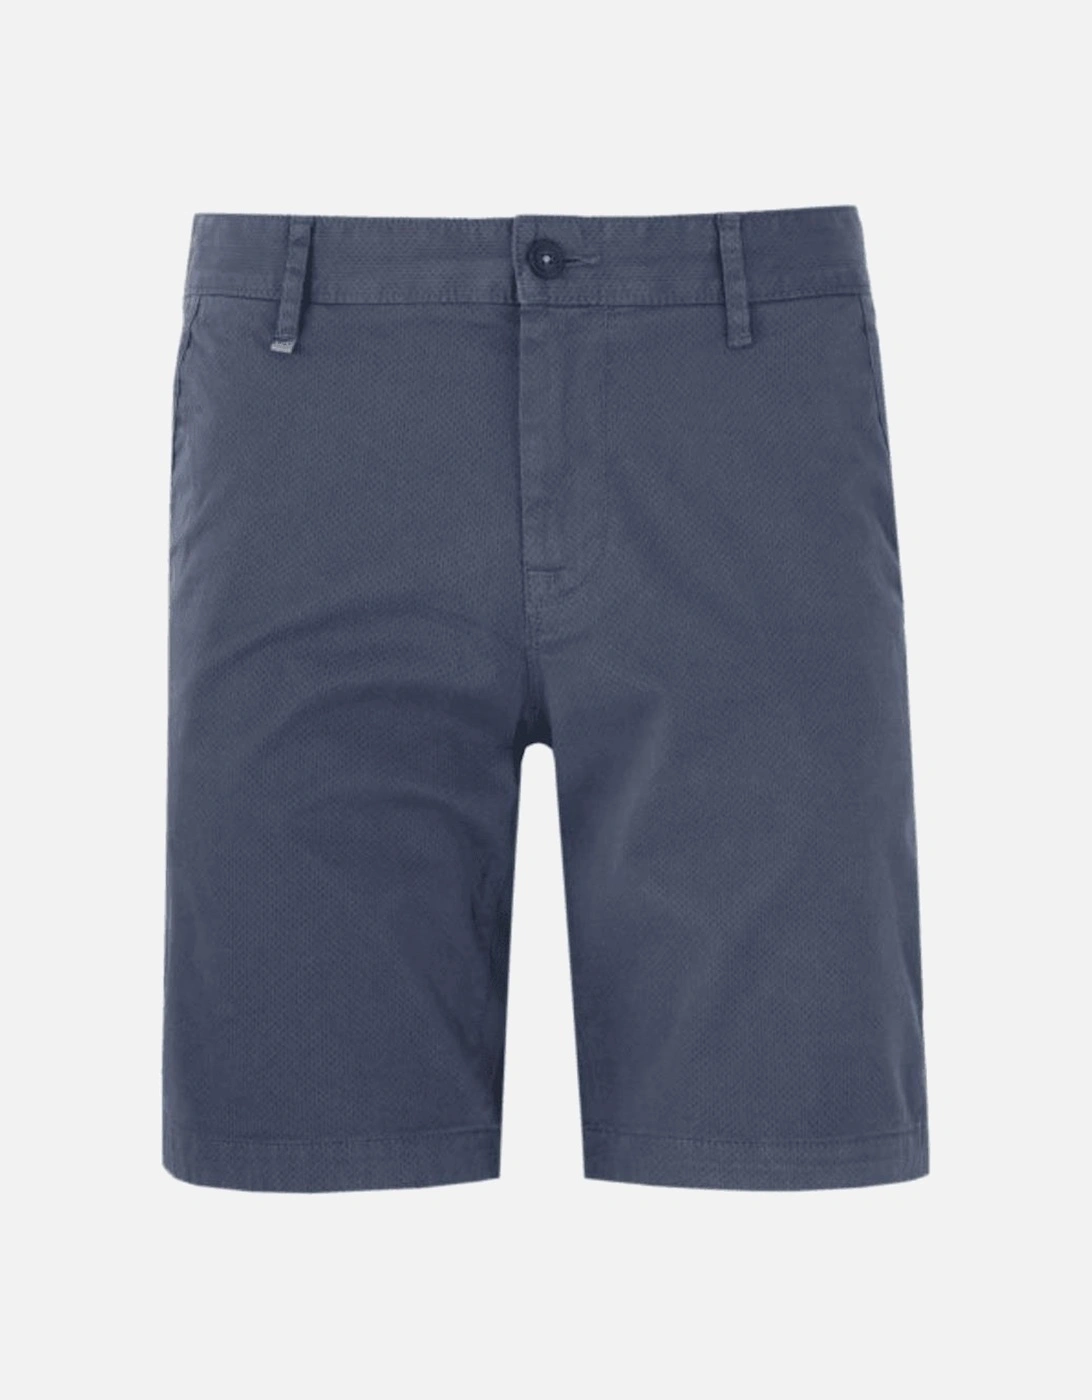 Schino Pique Cotton Blue Chino Shorts, 2 of 1